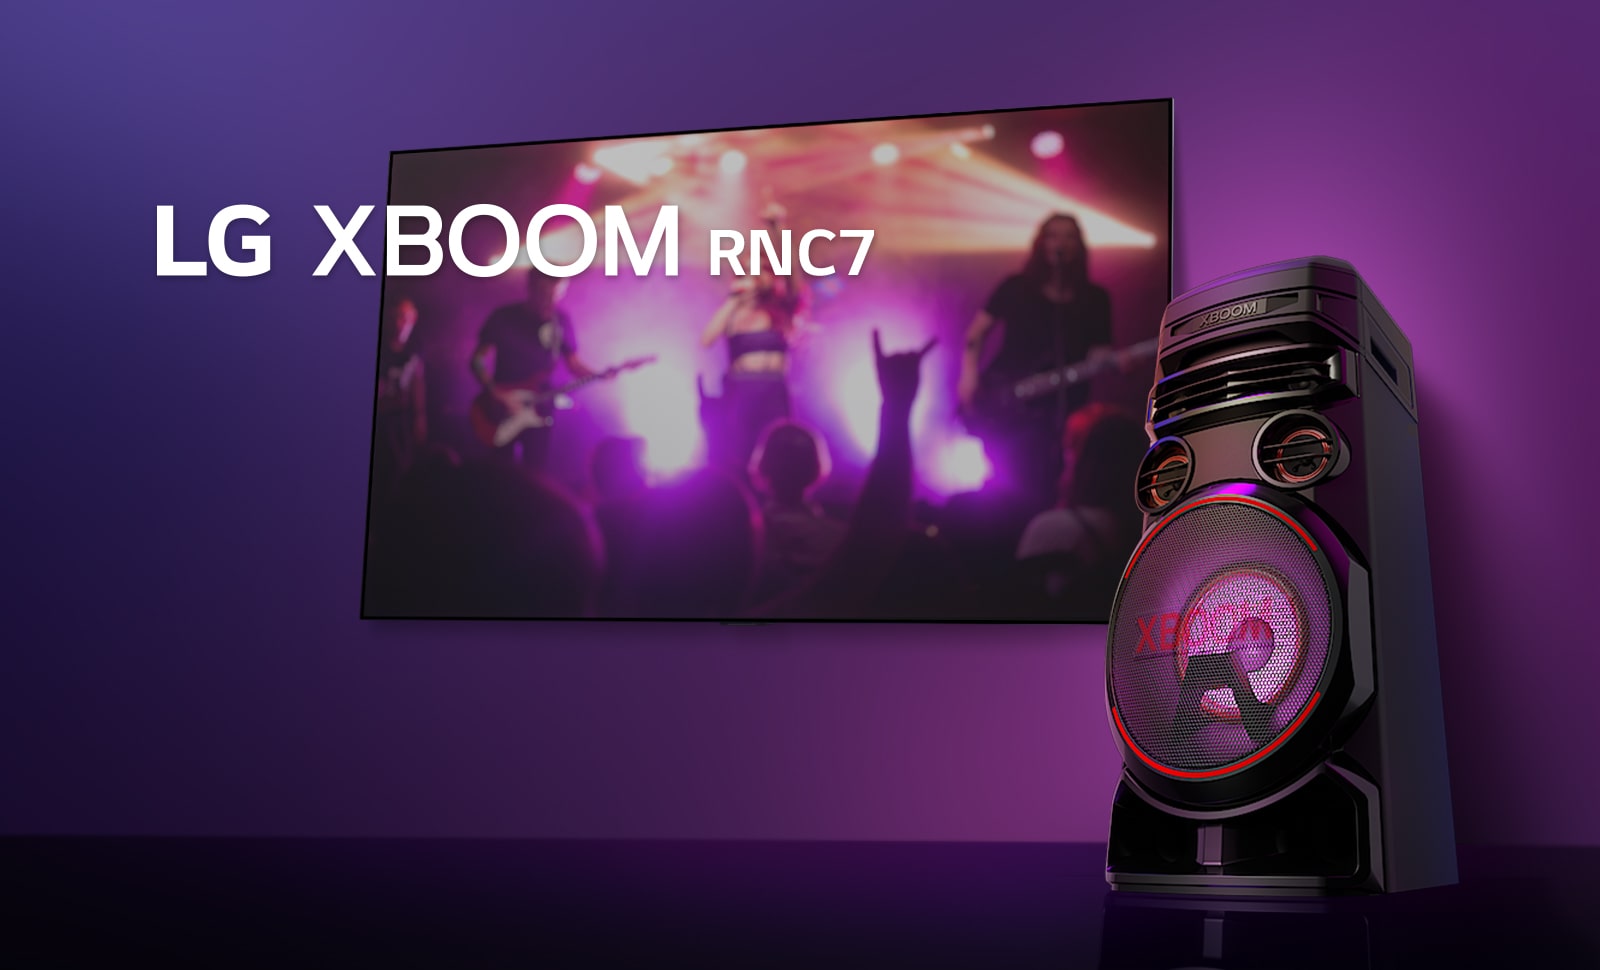 Hình ảnh ở góc thấp mặt bên phải của LG XBOOM RNC7 trên nền tím. Đèn XBOOM cũng có màu tím. Đồng thời màn hình TV hiển thị khung cảnh buổi hòa nhạc.